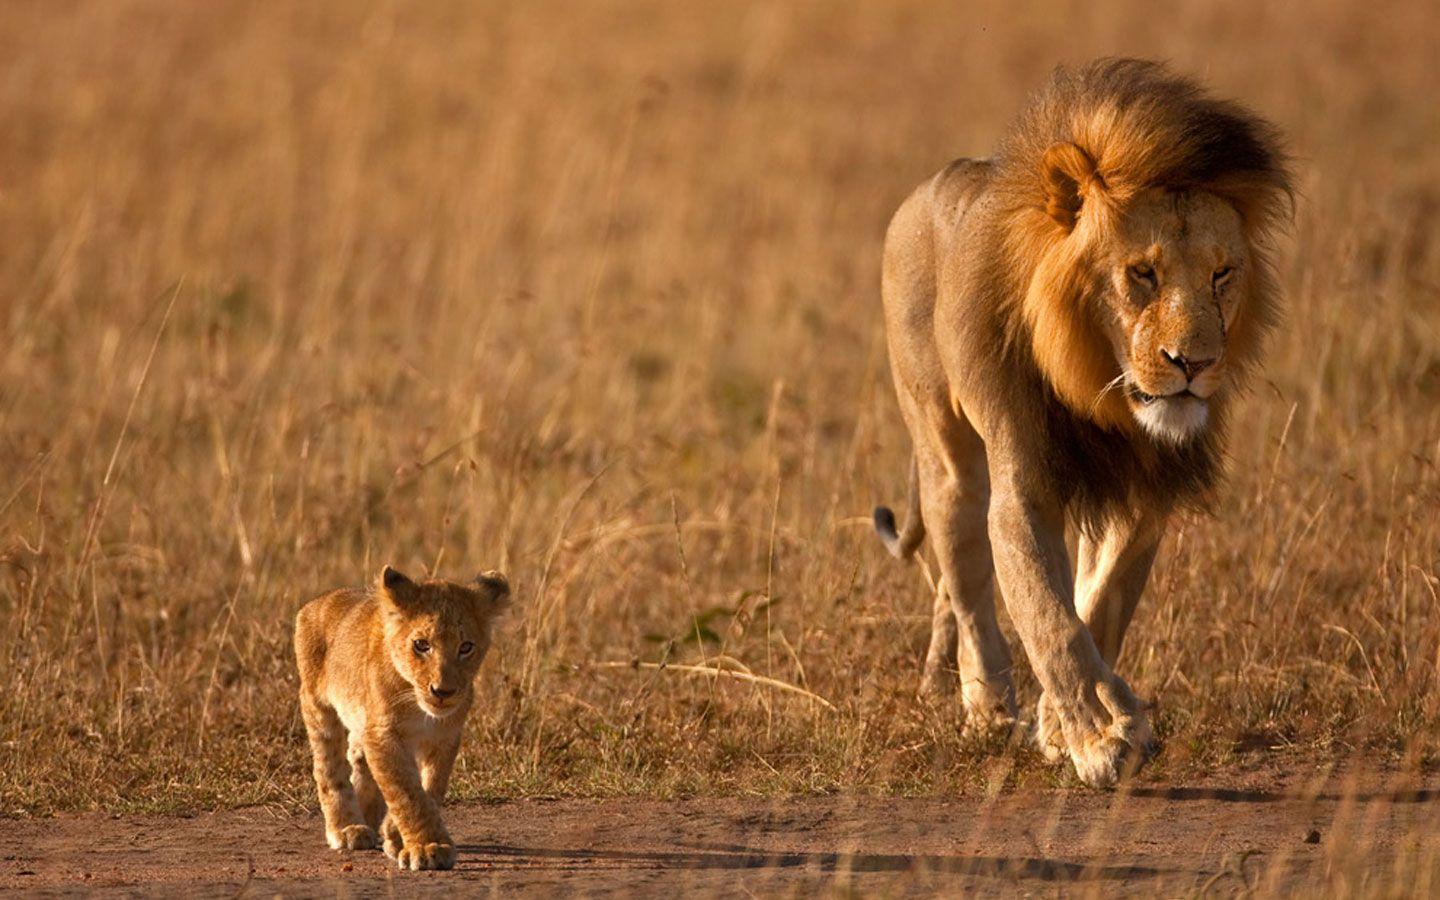 عکسی زیبا از بچه شیر که در کنار پدرش قدم برمیدارد بدون متن  